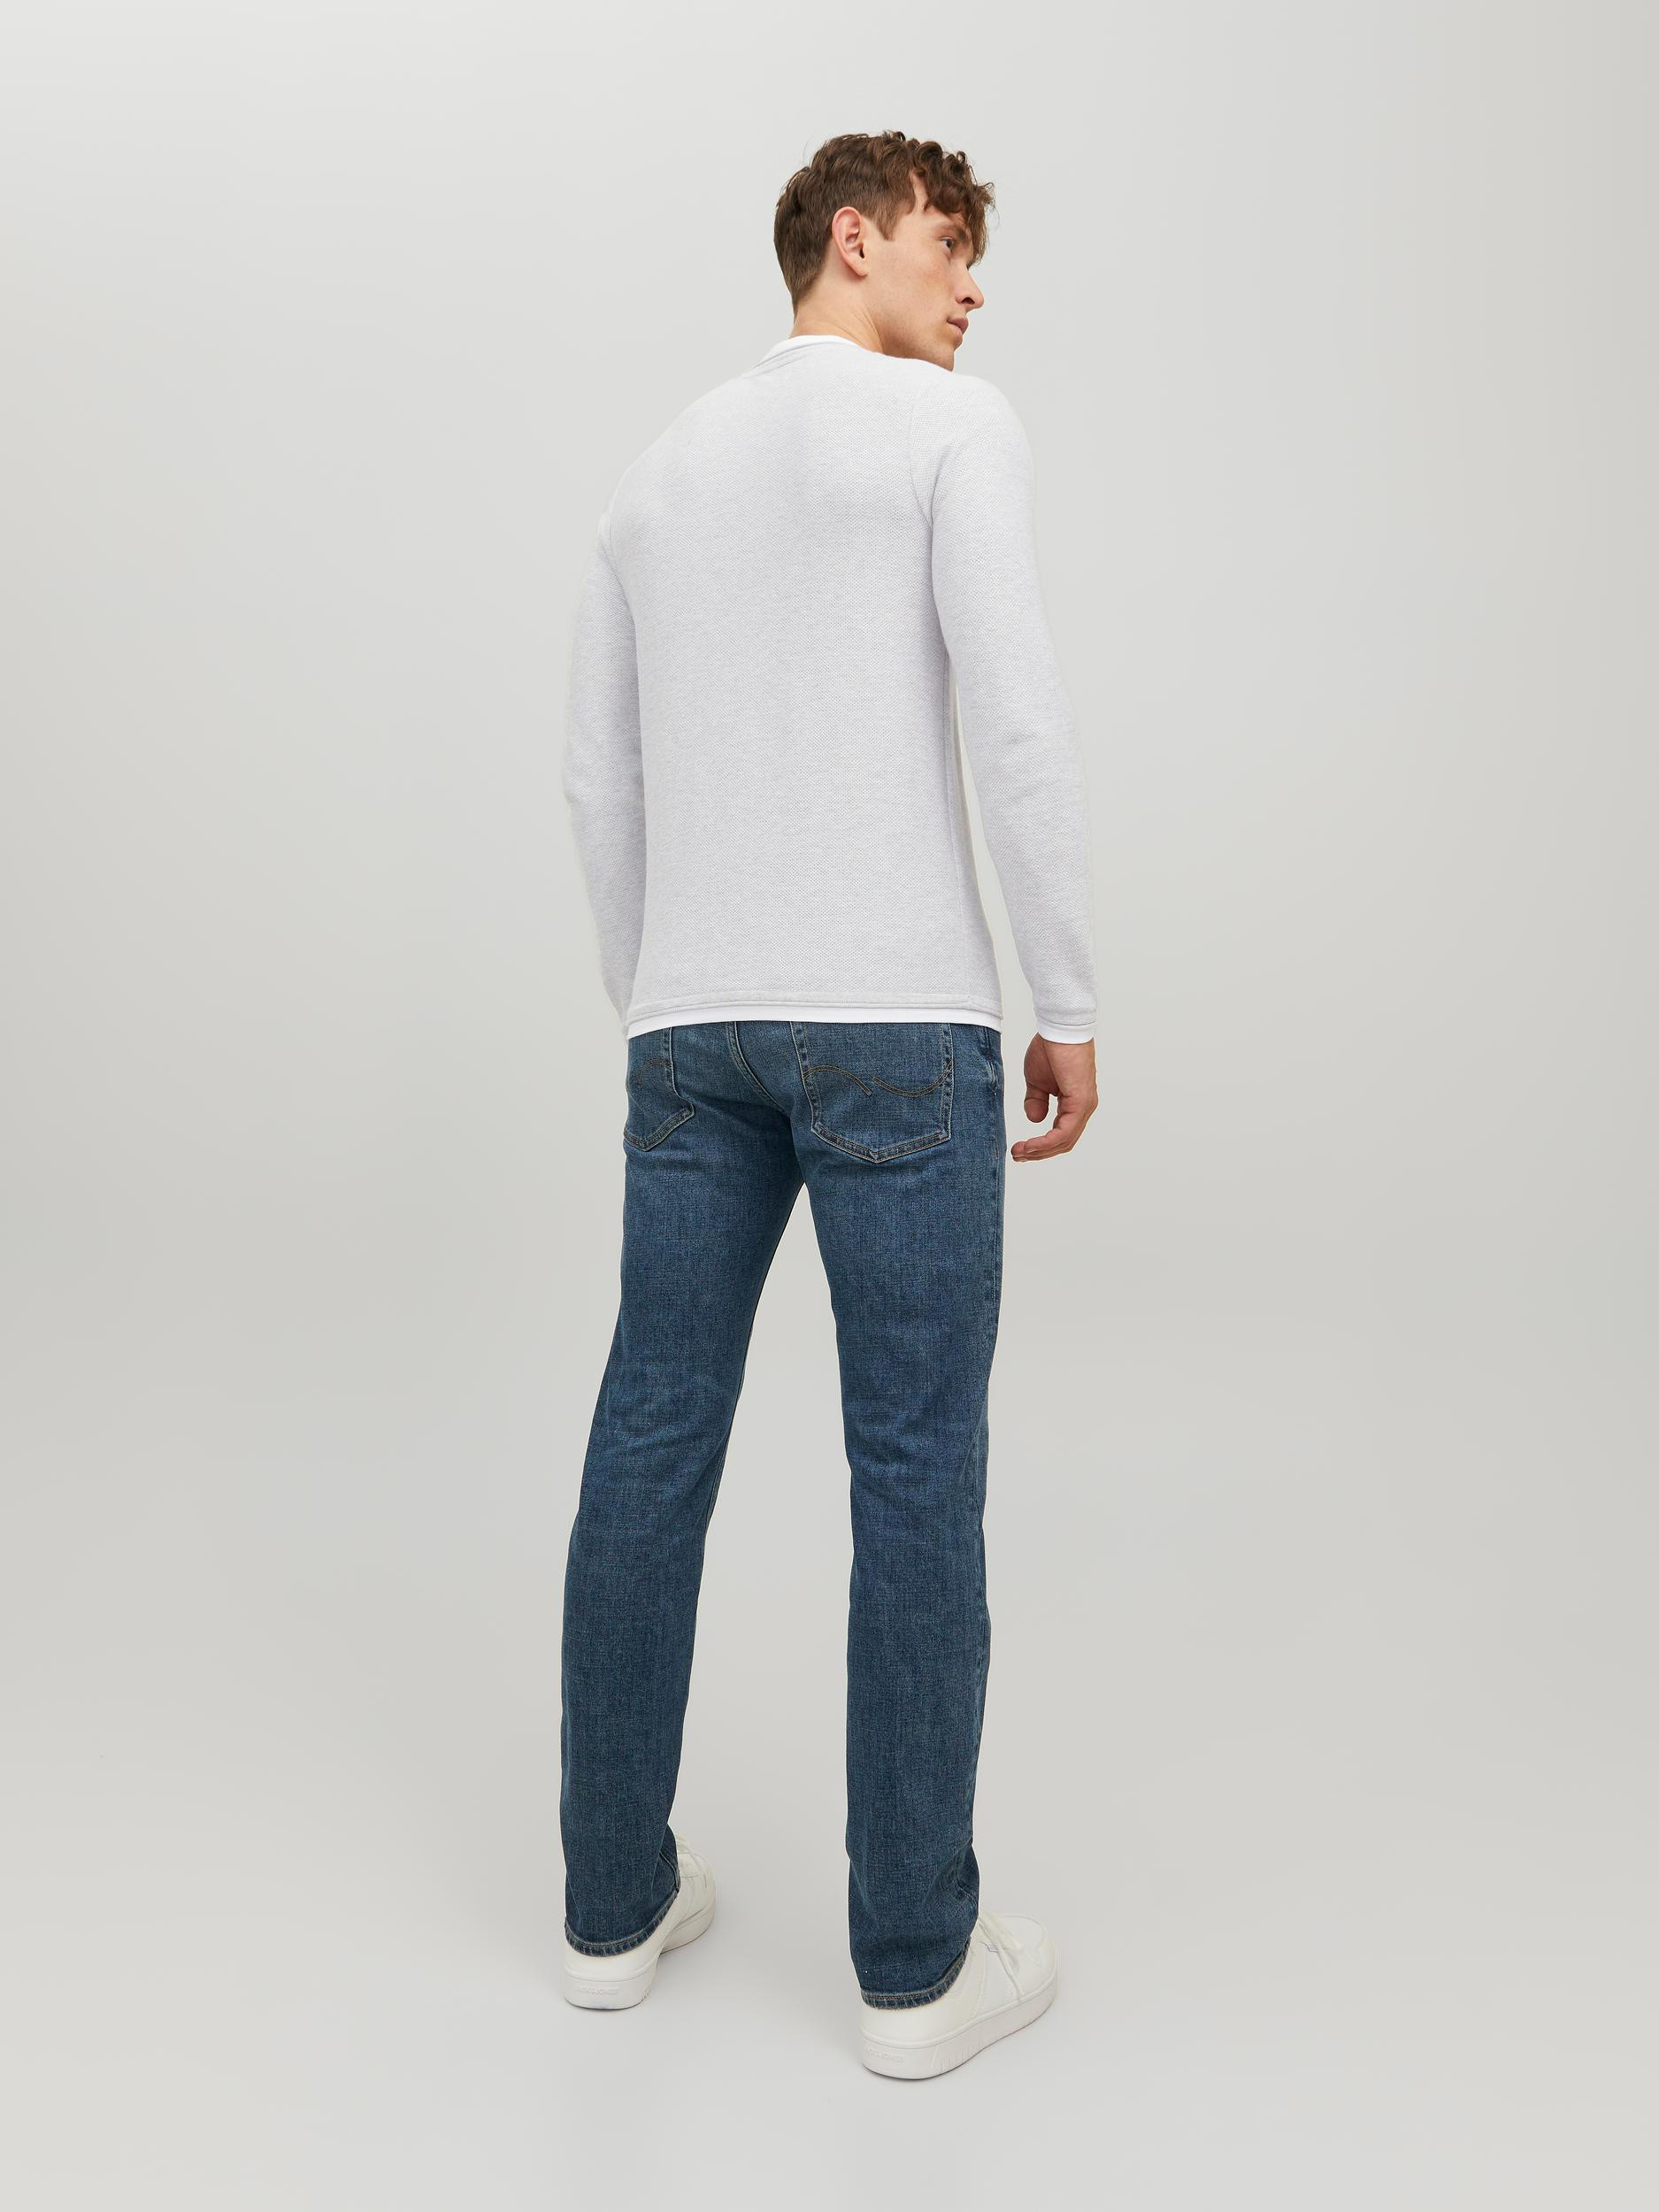 Jack & Jones - Cotton pullover, Light Grey, large image number 3